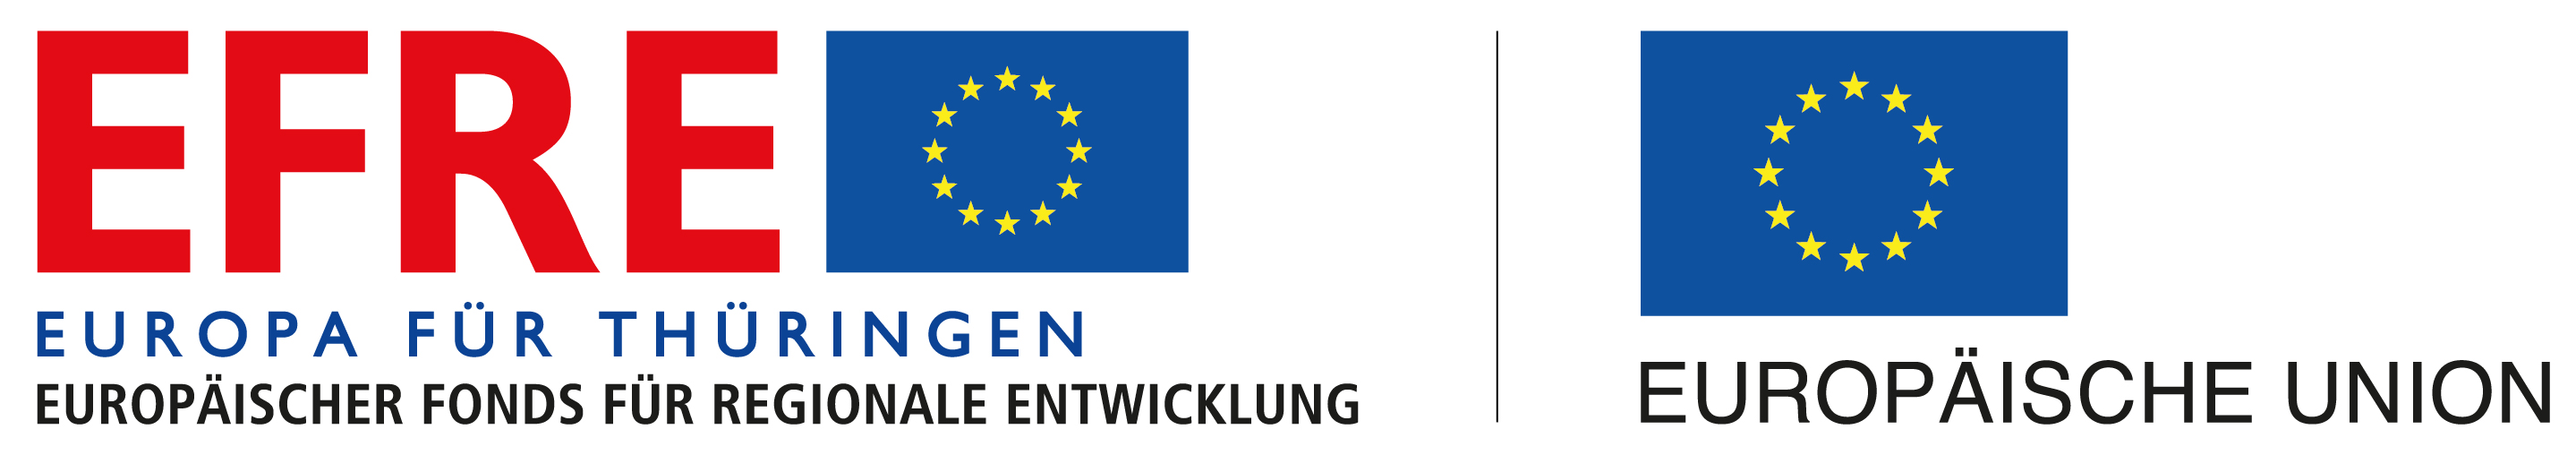 Signet-Paar mit Landessignet Thüringen, Unionslogo und EFRE-Logo